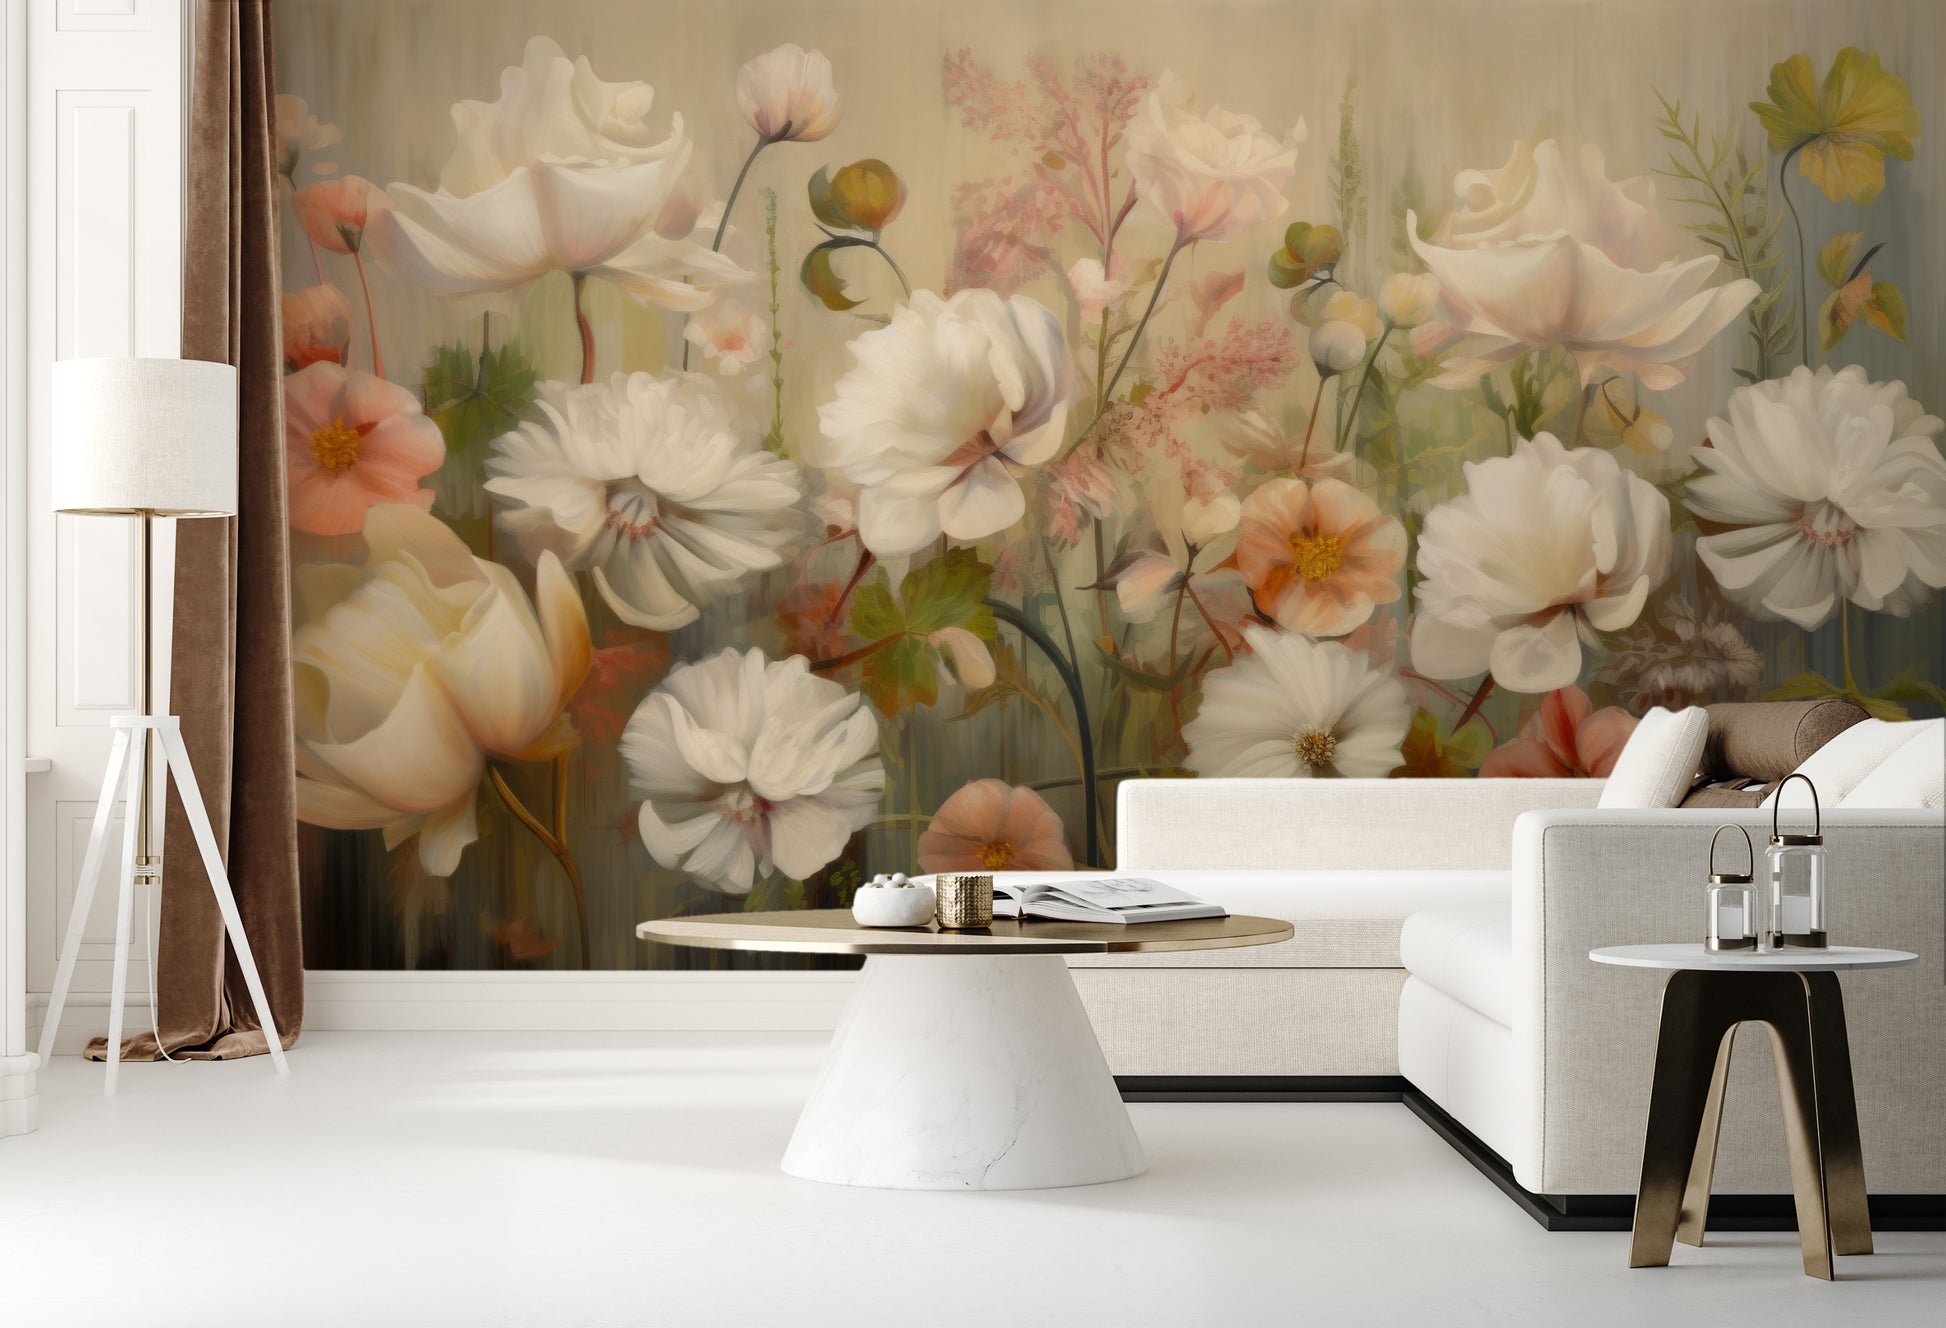 Wzór fototapety malowanej o nazwie Serene Pastel Bouquet pokazanej w aranżacji wnętrza.